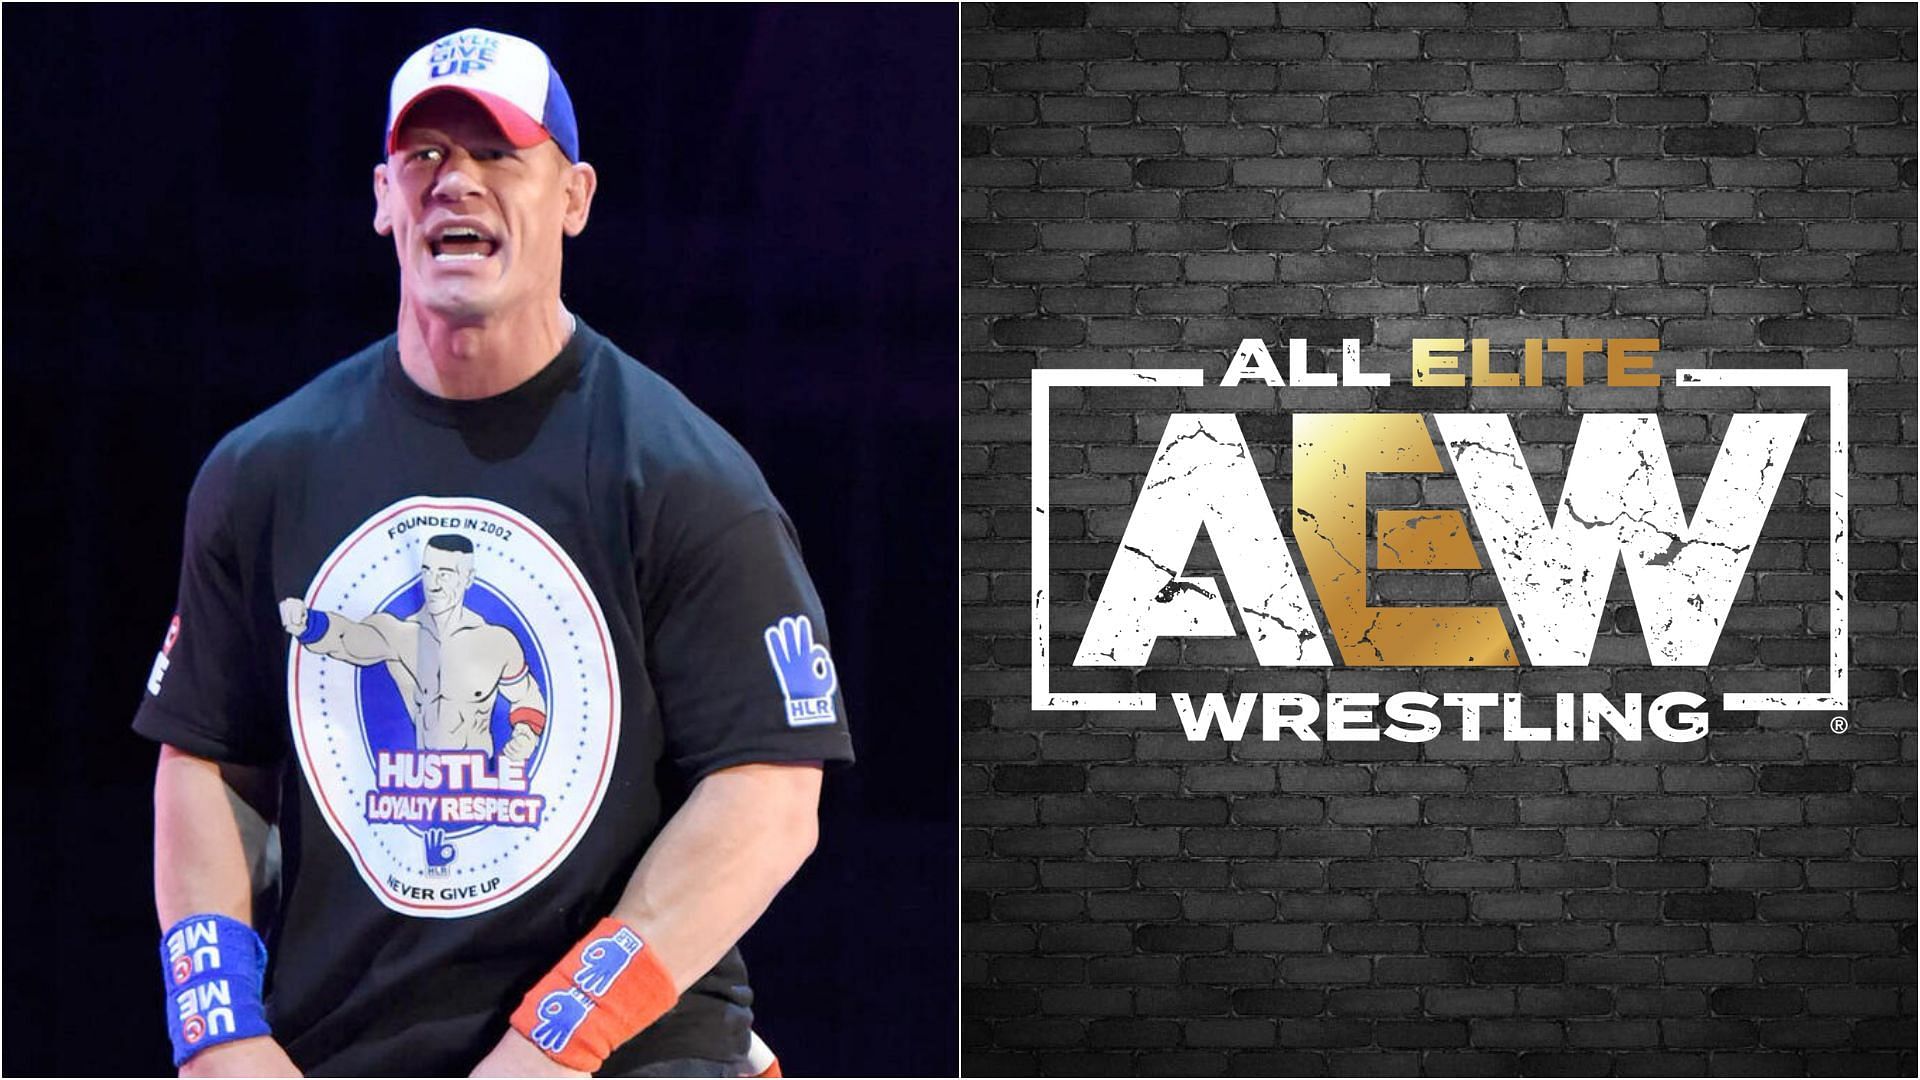 John Cena (left) &amp; AEW logo (right) [Image credits: wwe.com &amp; aew.com]